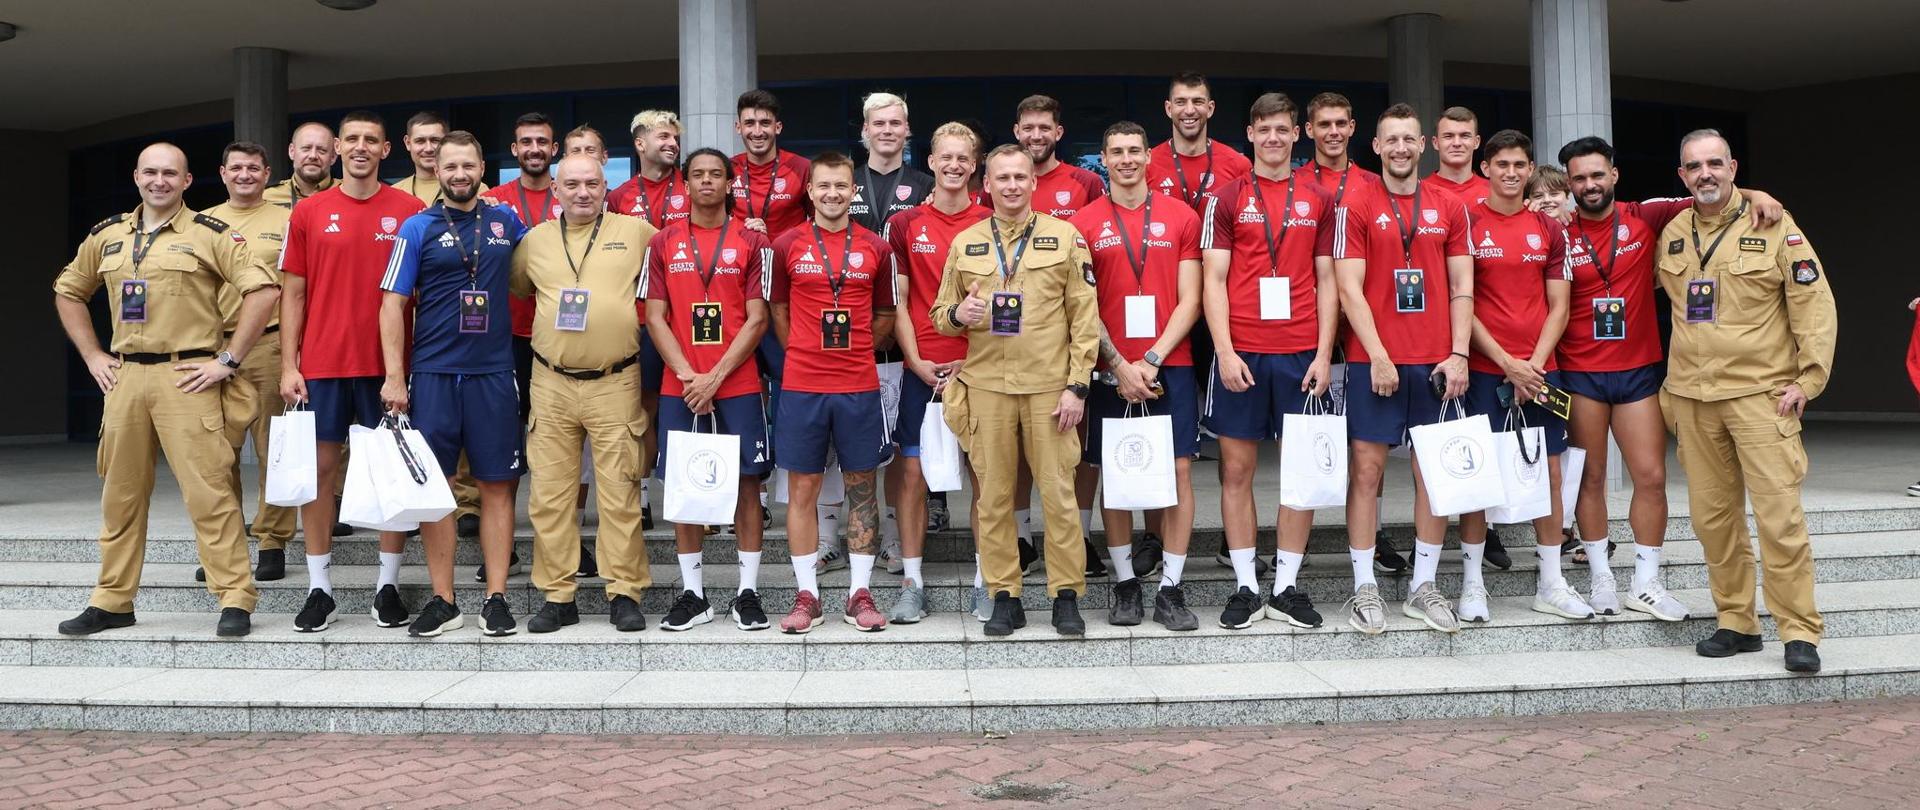 Pamiątkowe zdjęcie grupowe zawodników drużyny piłkarskiej Raków Częstochowa w towarzystwie kierownictwa oraz czterech funkcjonariuszy Centralnej Szkoły PSP